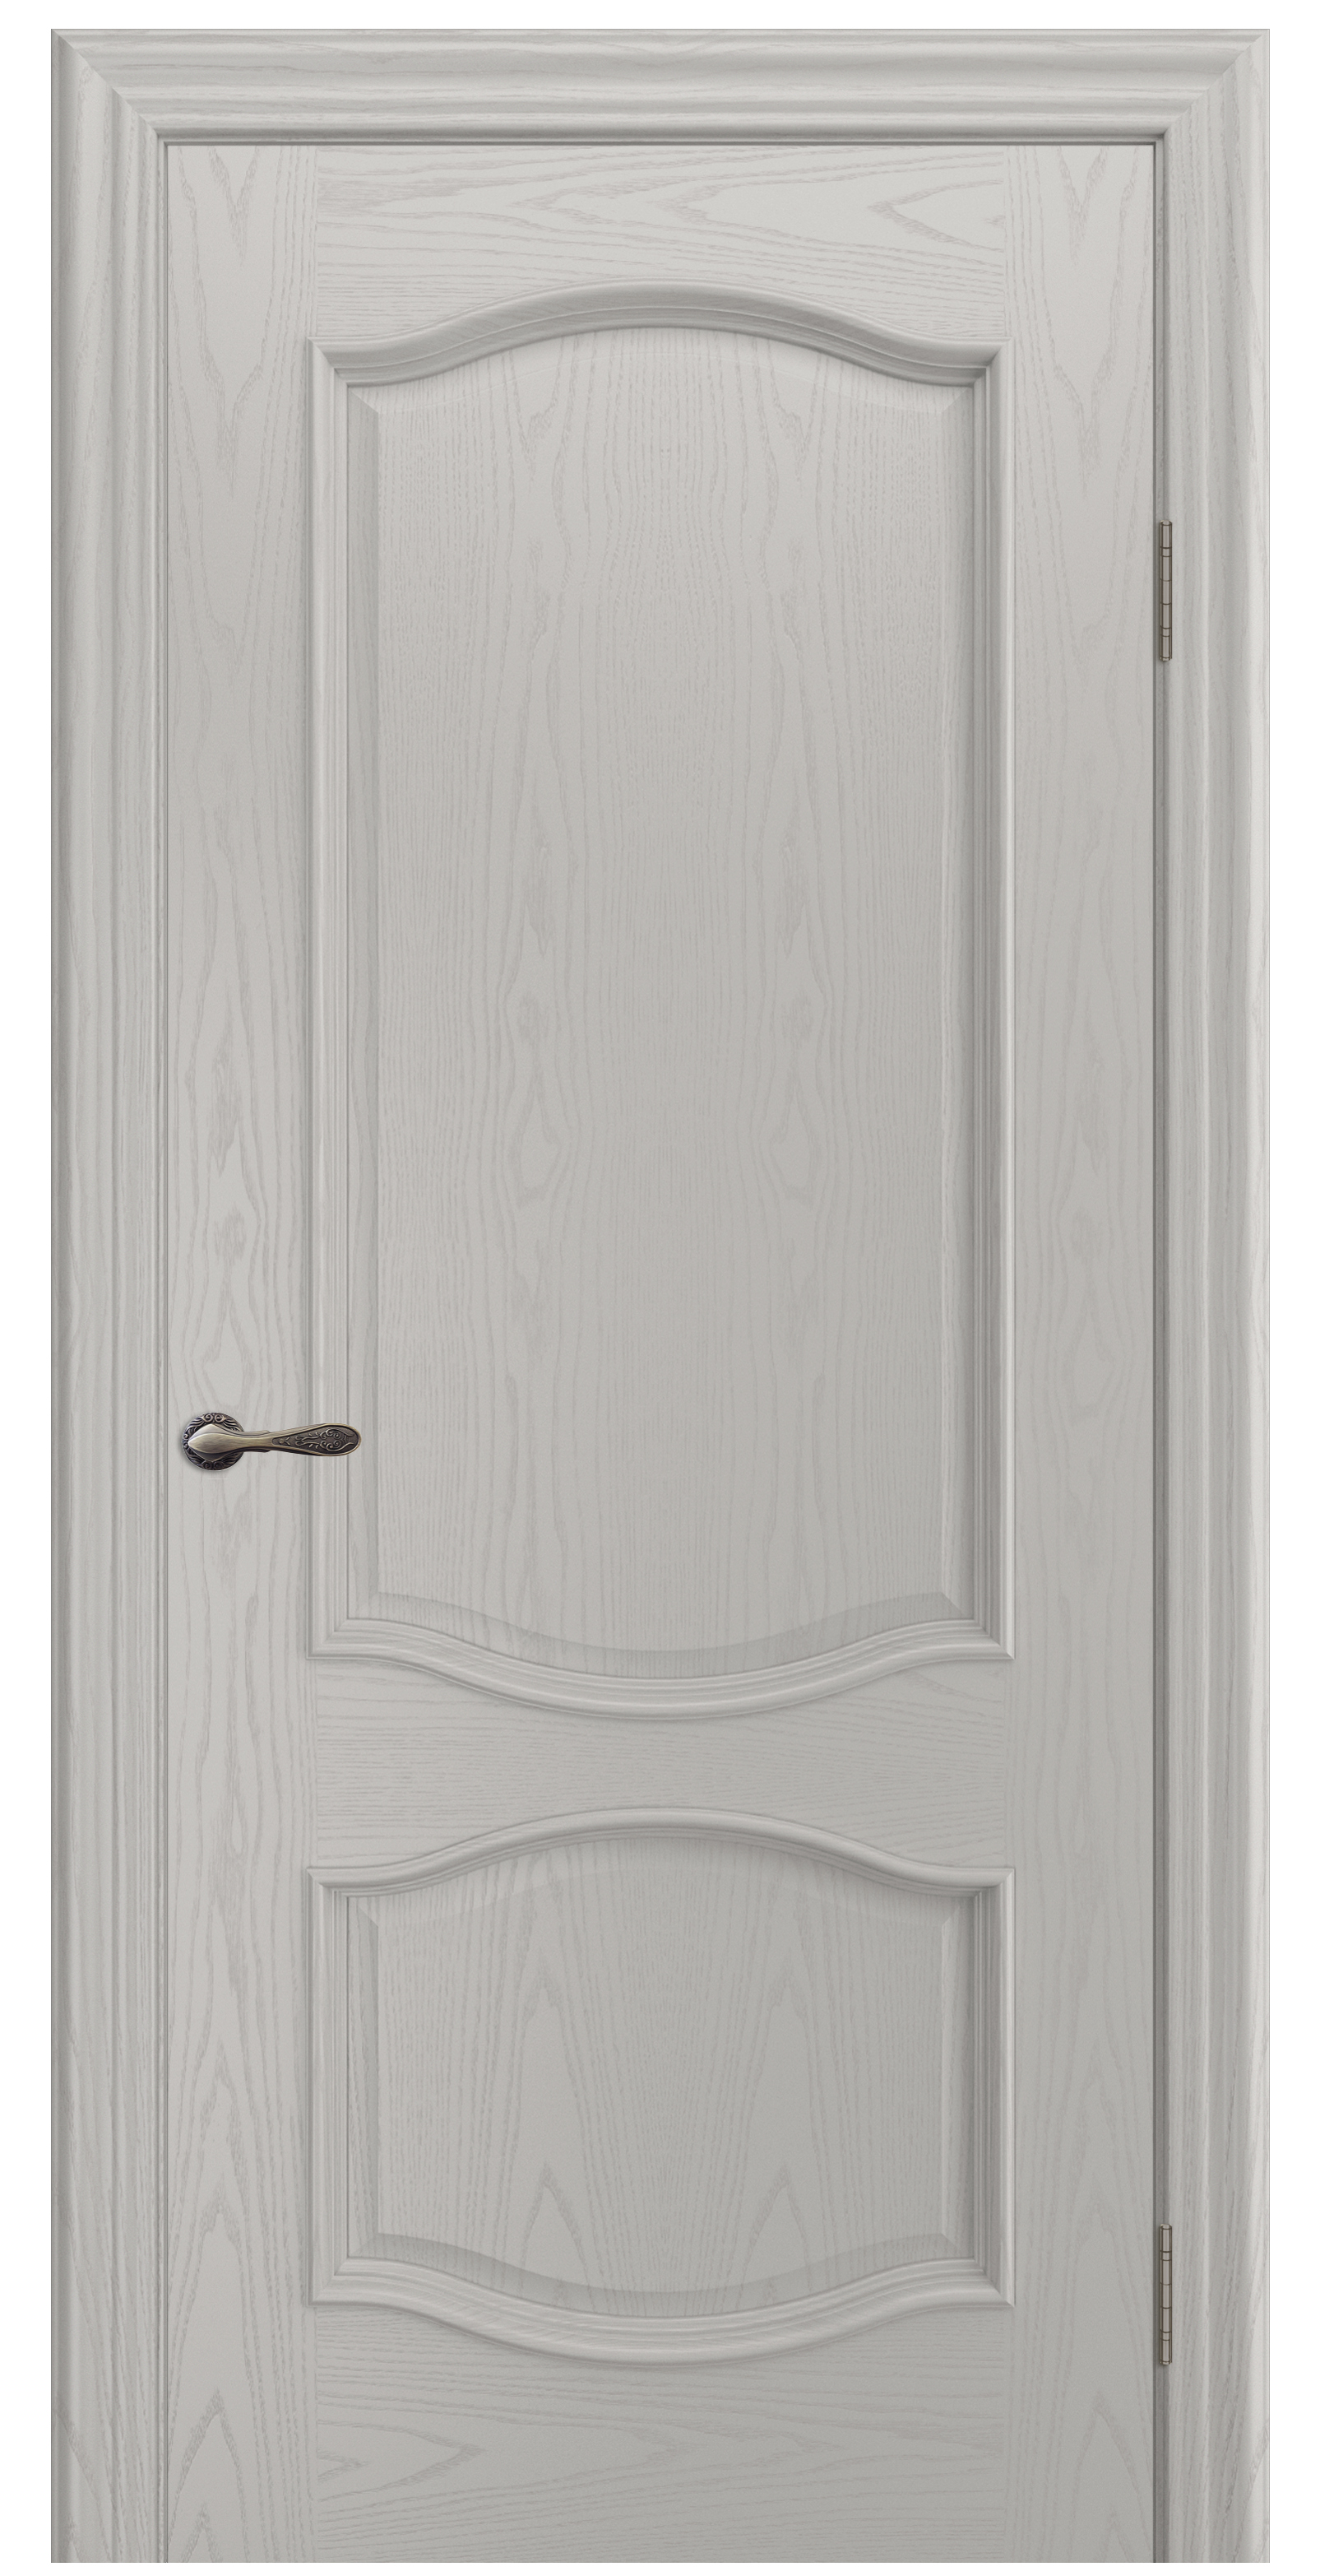 Межкомнатная дверь «София». Вид отделки Тон 30 Cтандартный наличник